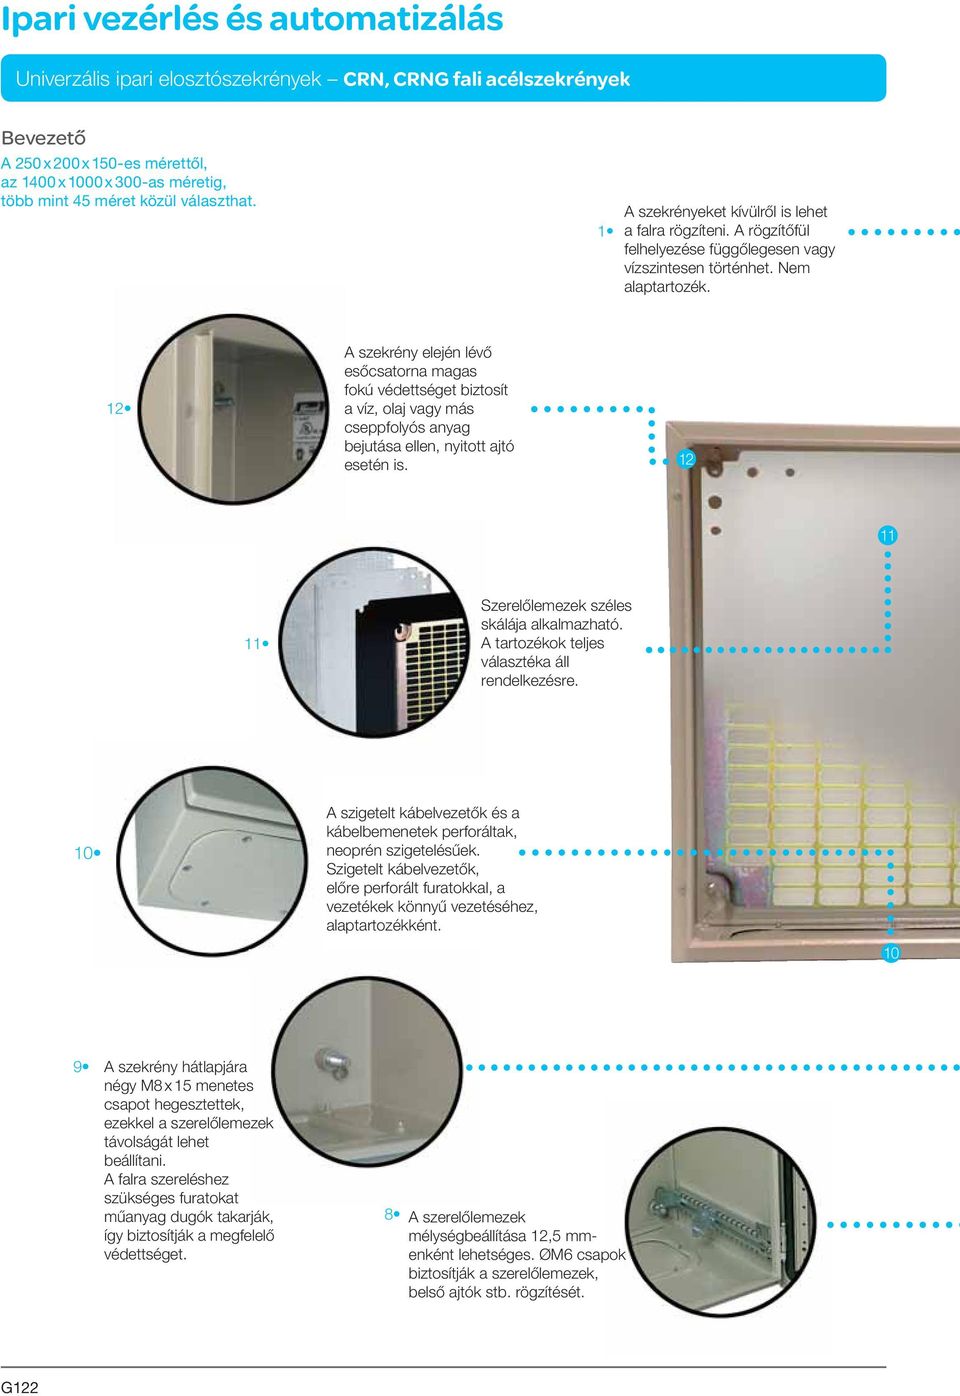 12 A szekrény elején lévő esőcsatorna magas fokú védettséget biztosít a víz, olaj vagy más cseppfolyós anyag bejutása ellen, nyitott ajtó esetén is.